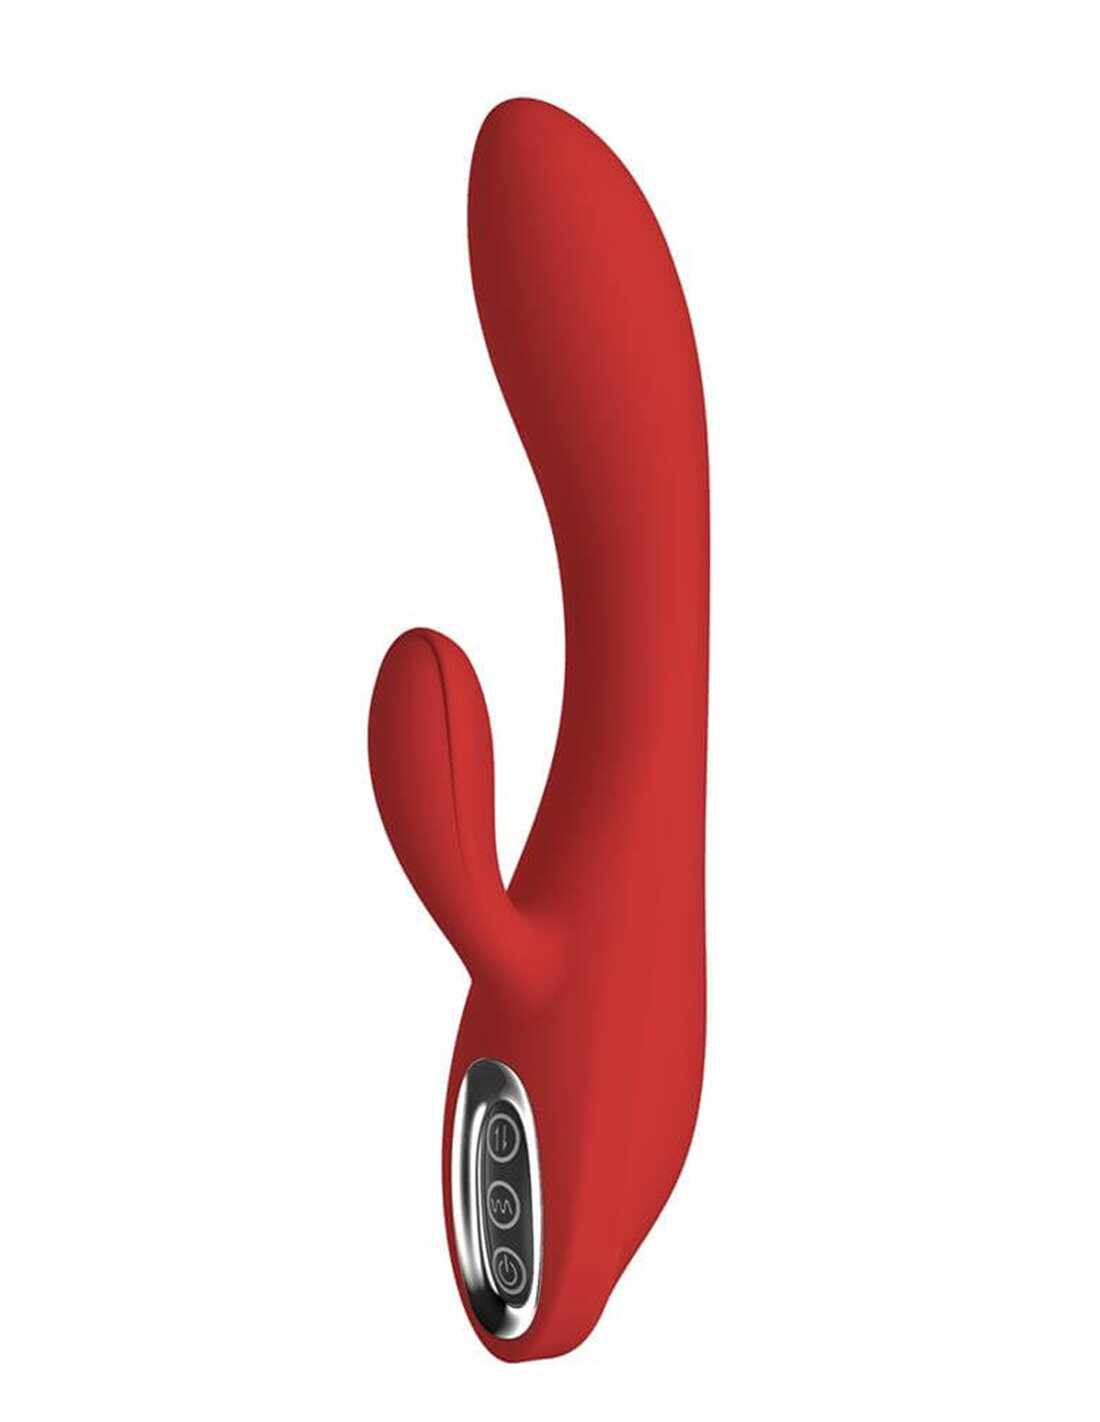 Vibrator Rabbit Sofia 7 Moduri Vibratii Silicon USB Rosu 21 cm Red Revolution